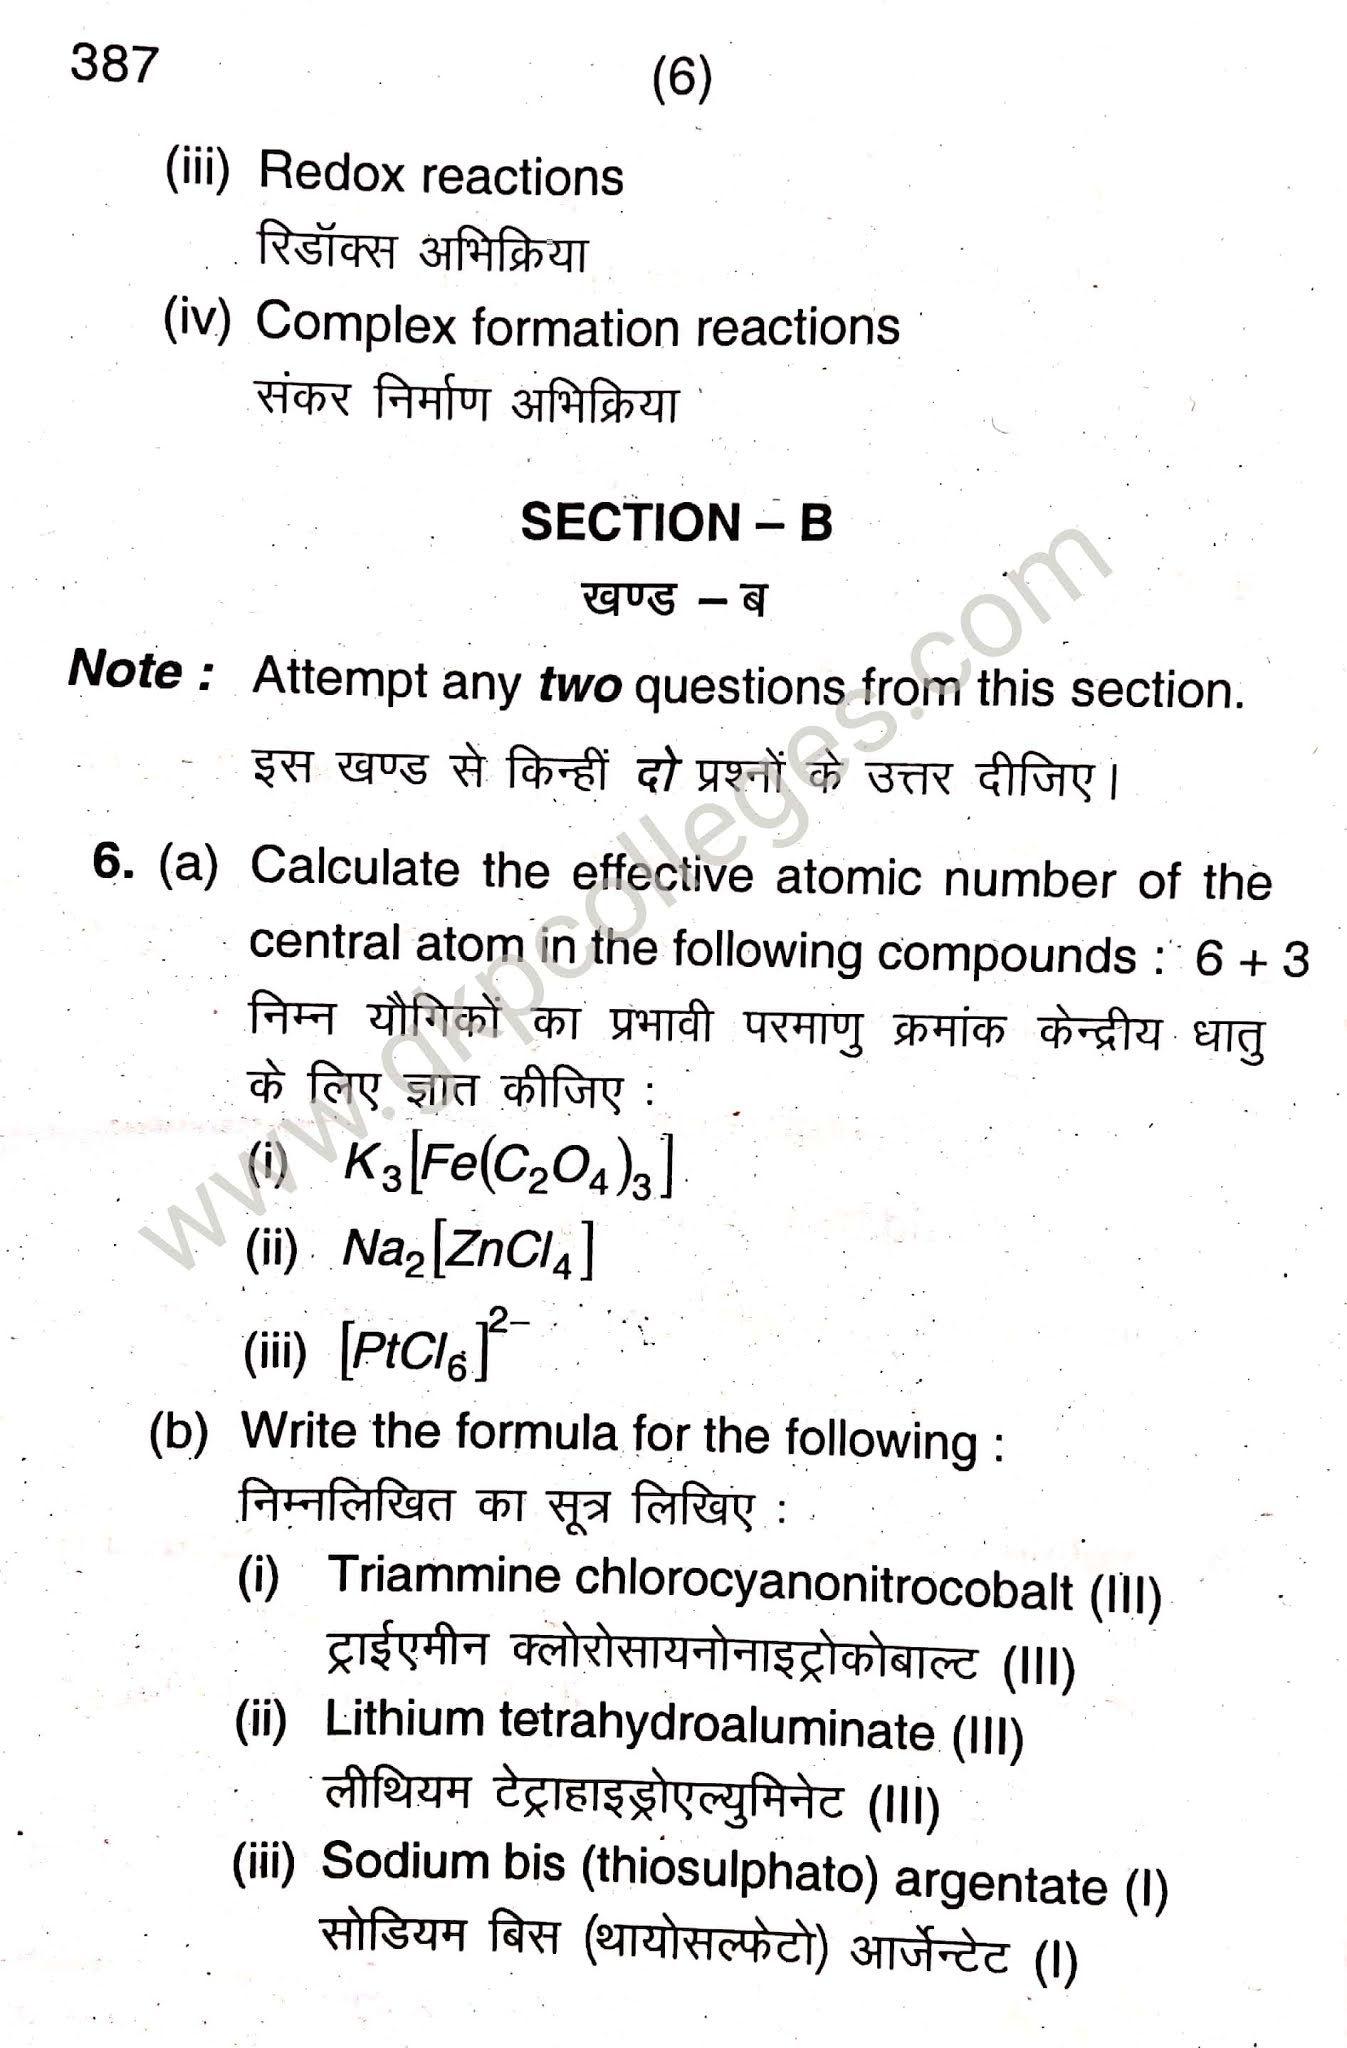 Inorganic chemistry, Paper- 2nd for B.Sc. 2nd year students, DDU Gorakhpur University Examination 2019